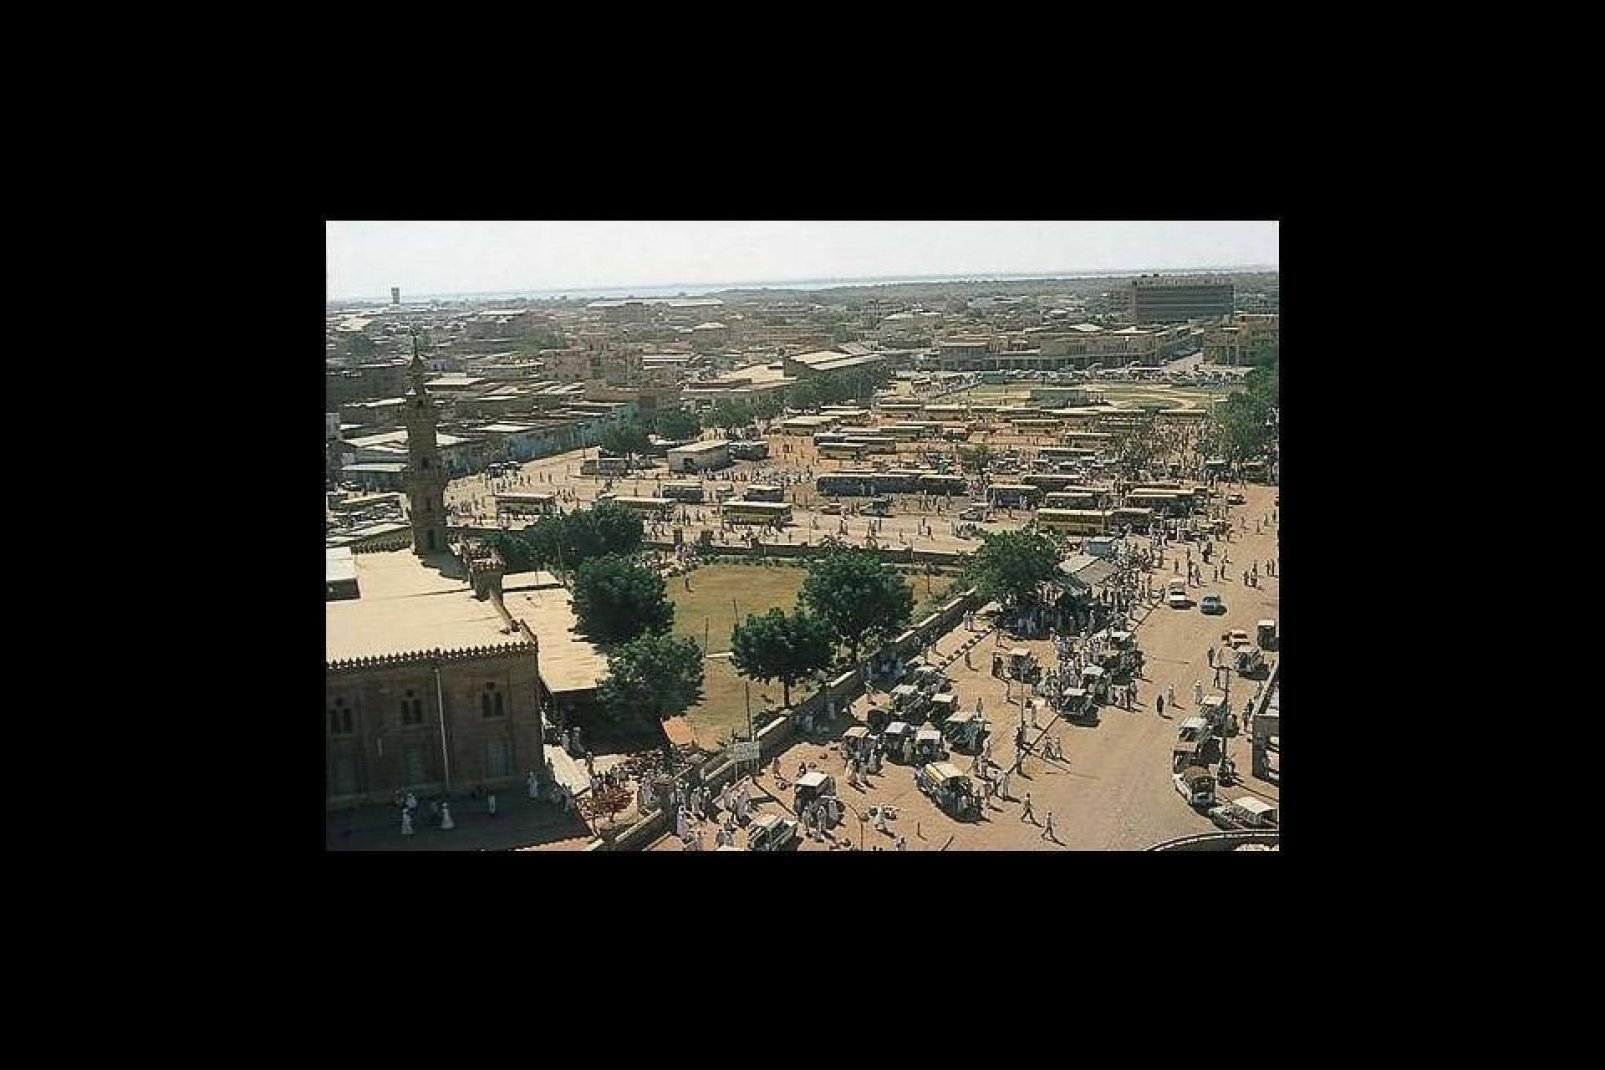 Il flotte à Khartoum une ambiance originale qui vaut le détour pour s'enivrer de l'ambiance de ses marchés.